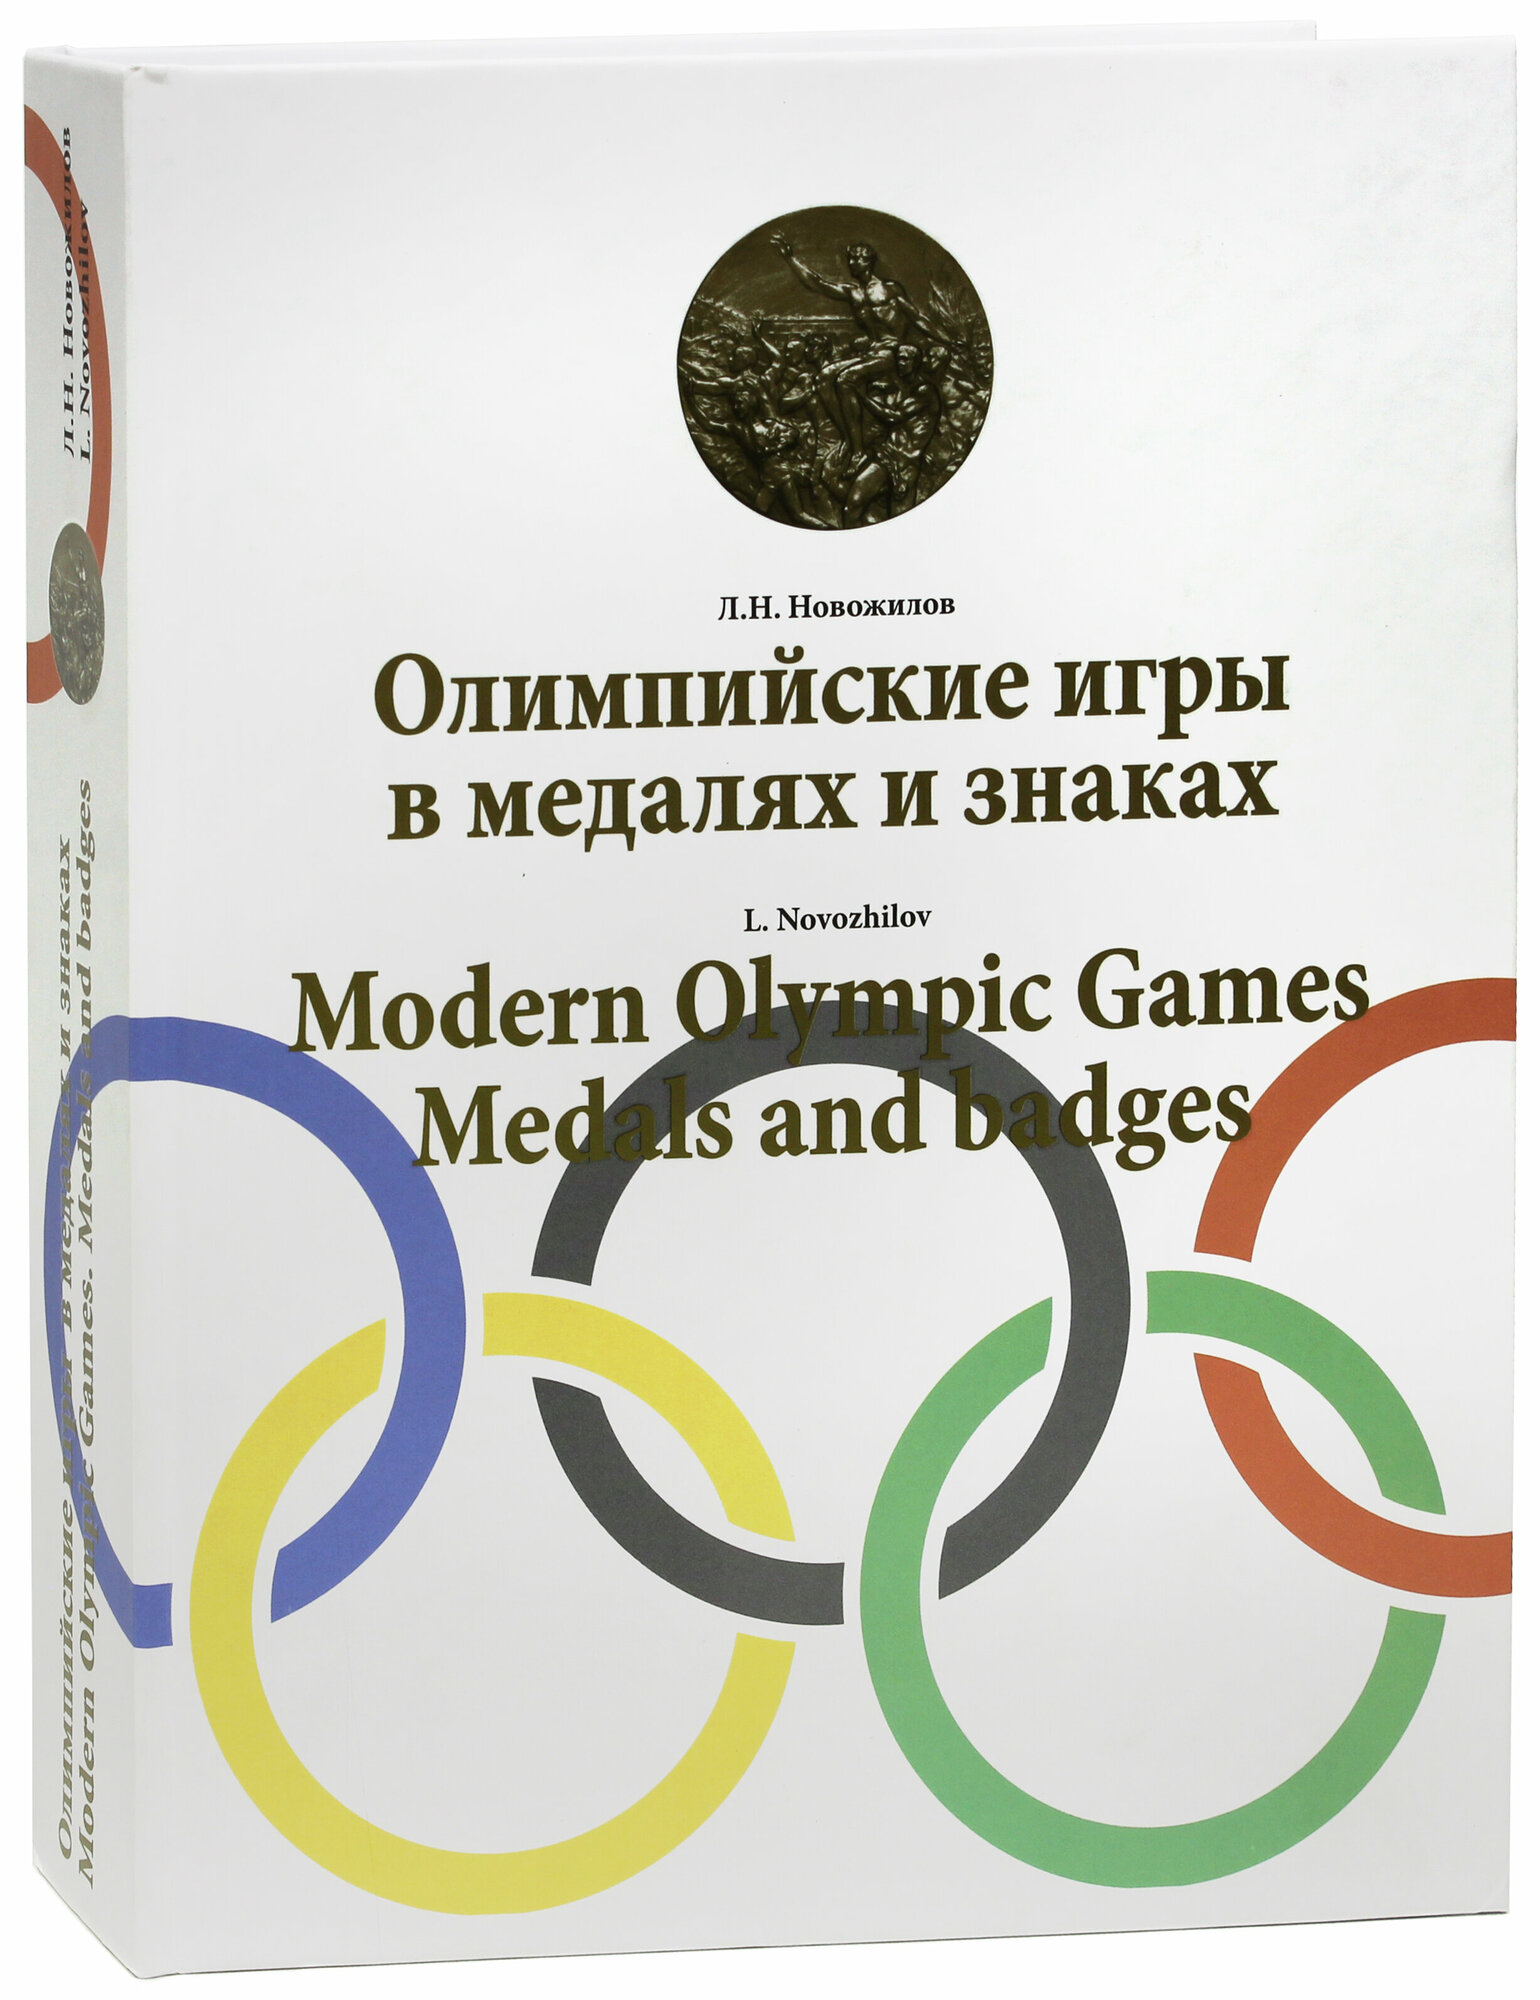 Олимпийские игры в медалях и знаках - фото №2